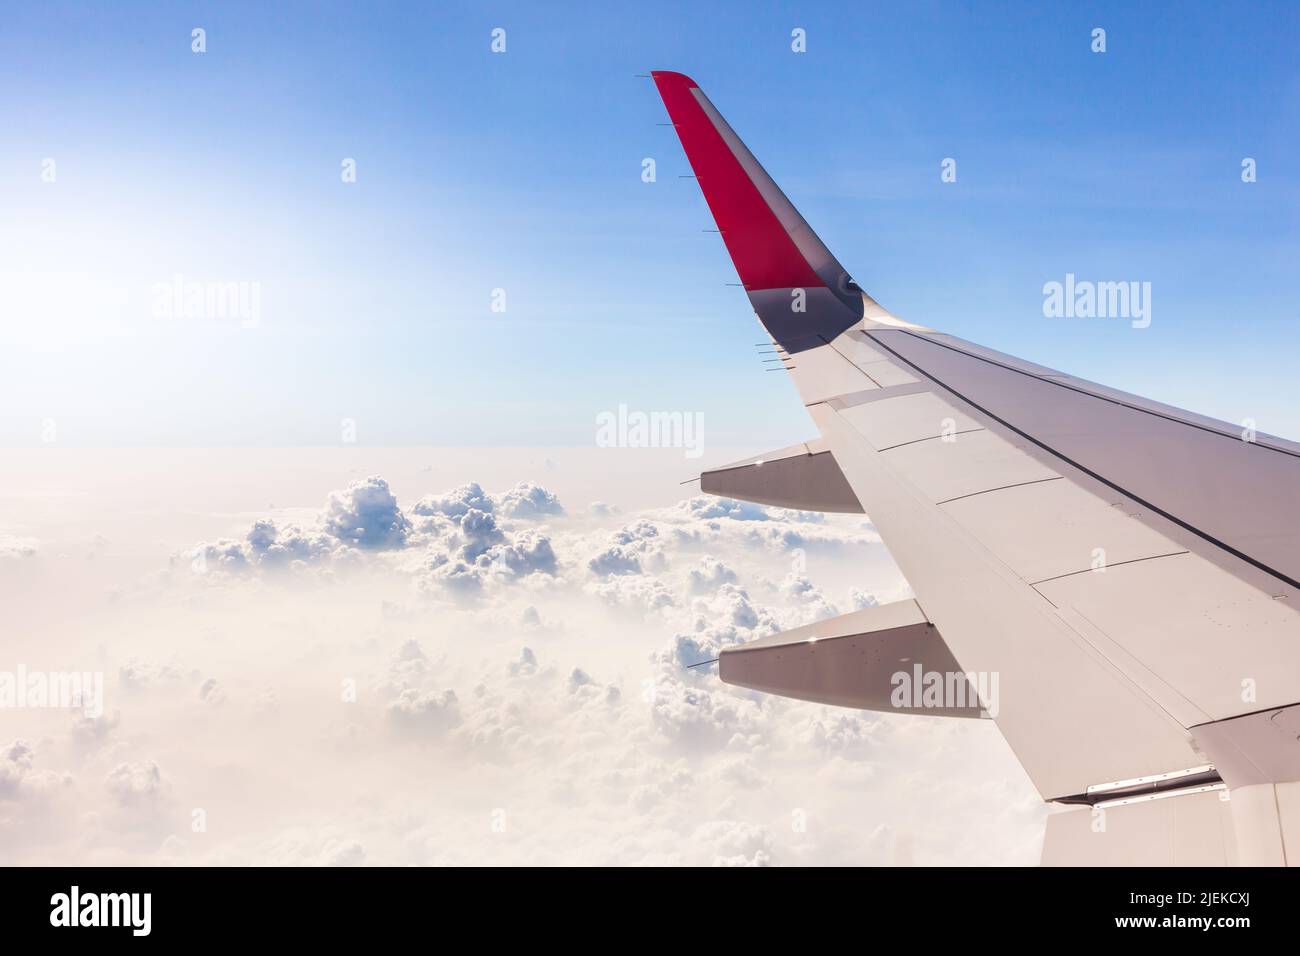 Les ailes d'avion et les grappes de nuages blancs dans le ciel bleu et la lumière du soleil sont de beaux paysages, utilisés pour les illustrations et les images de fond de commer Banque D'Images